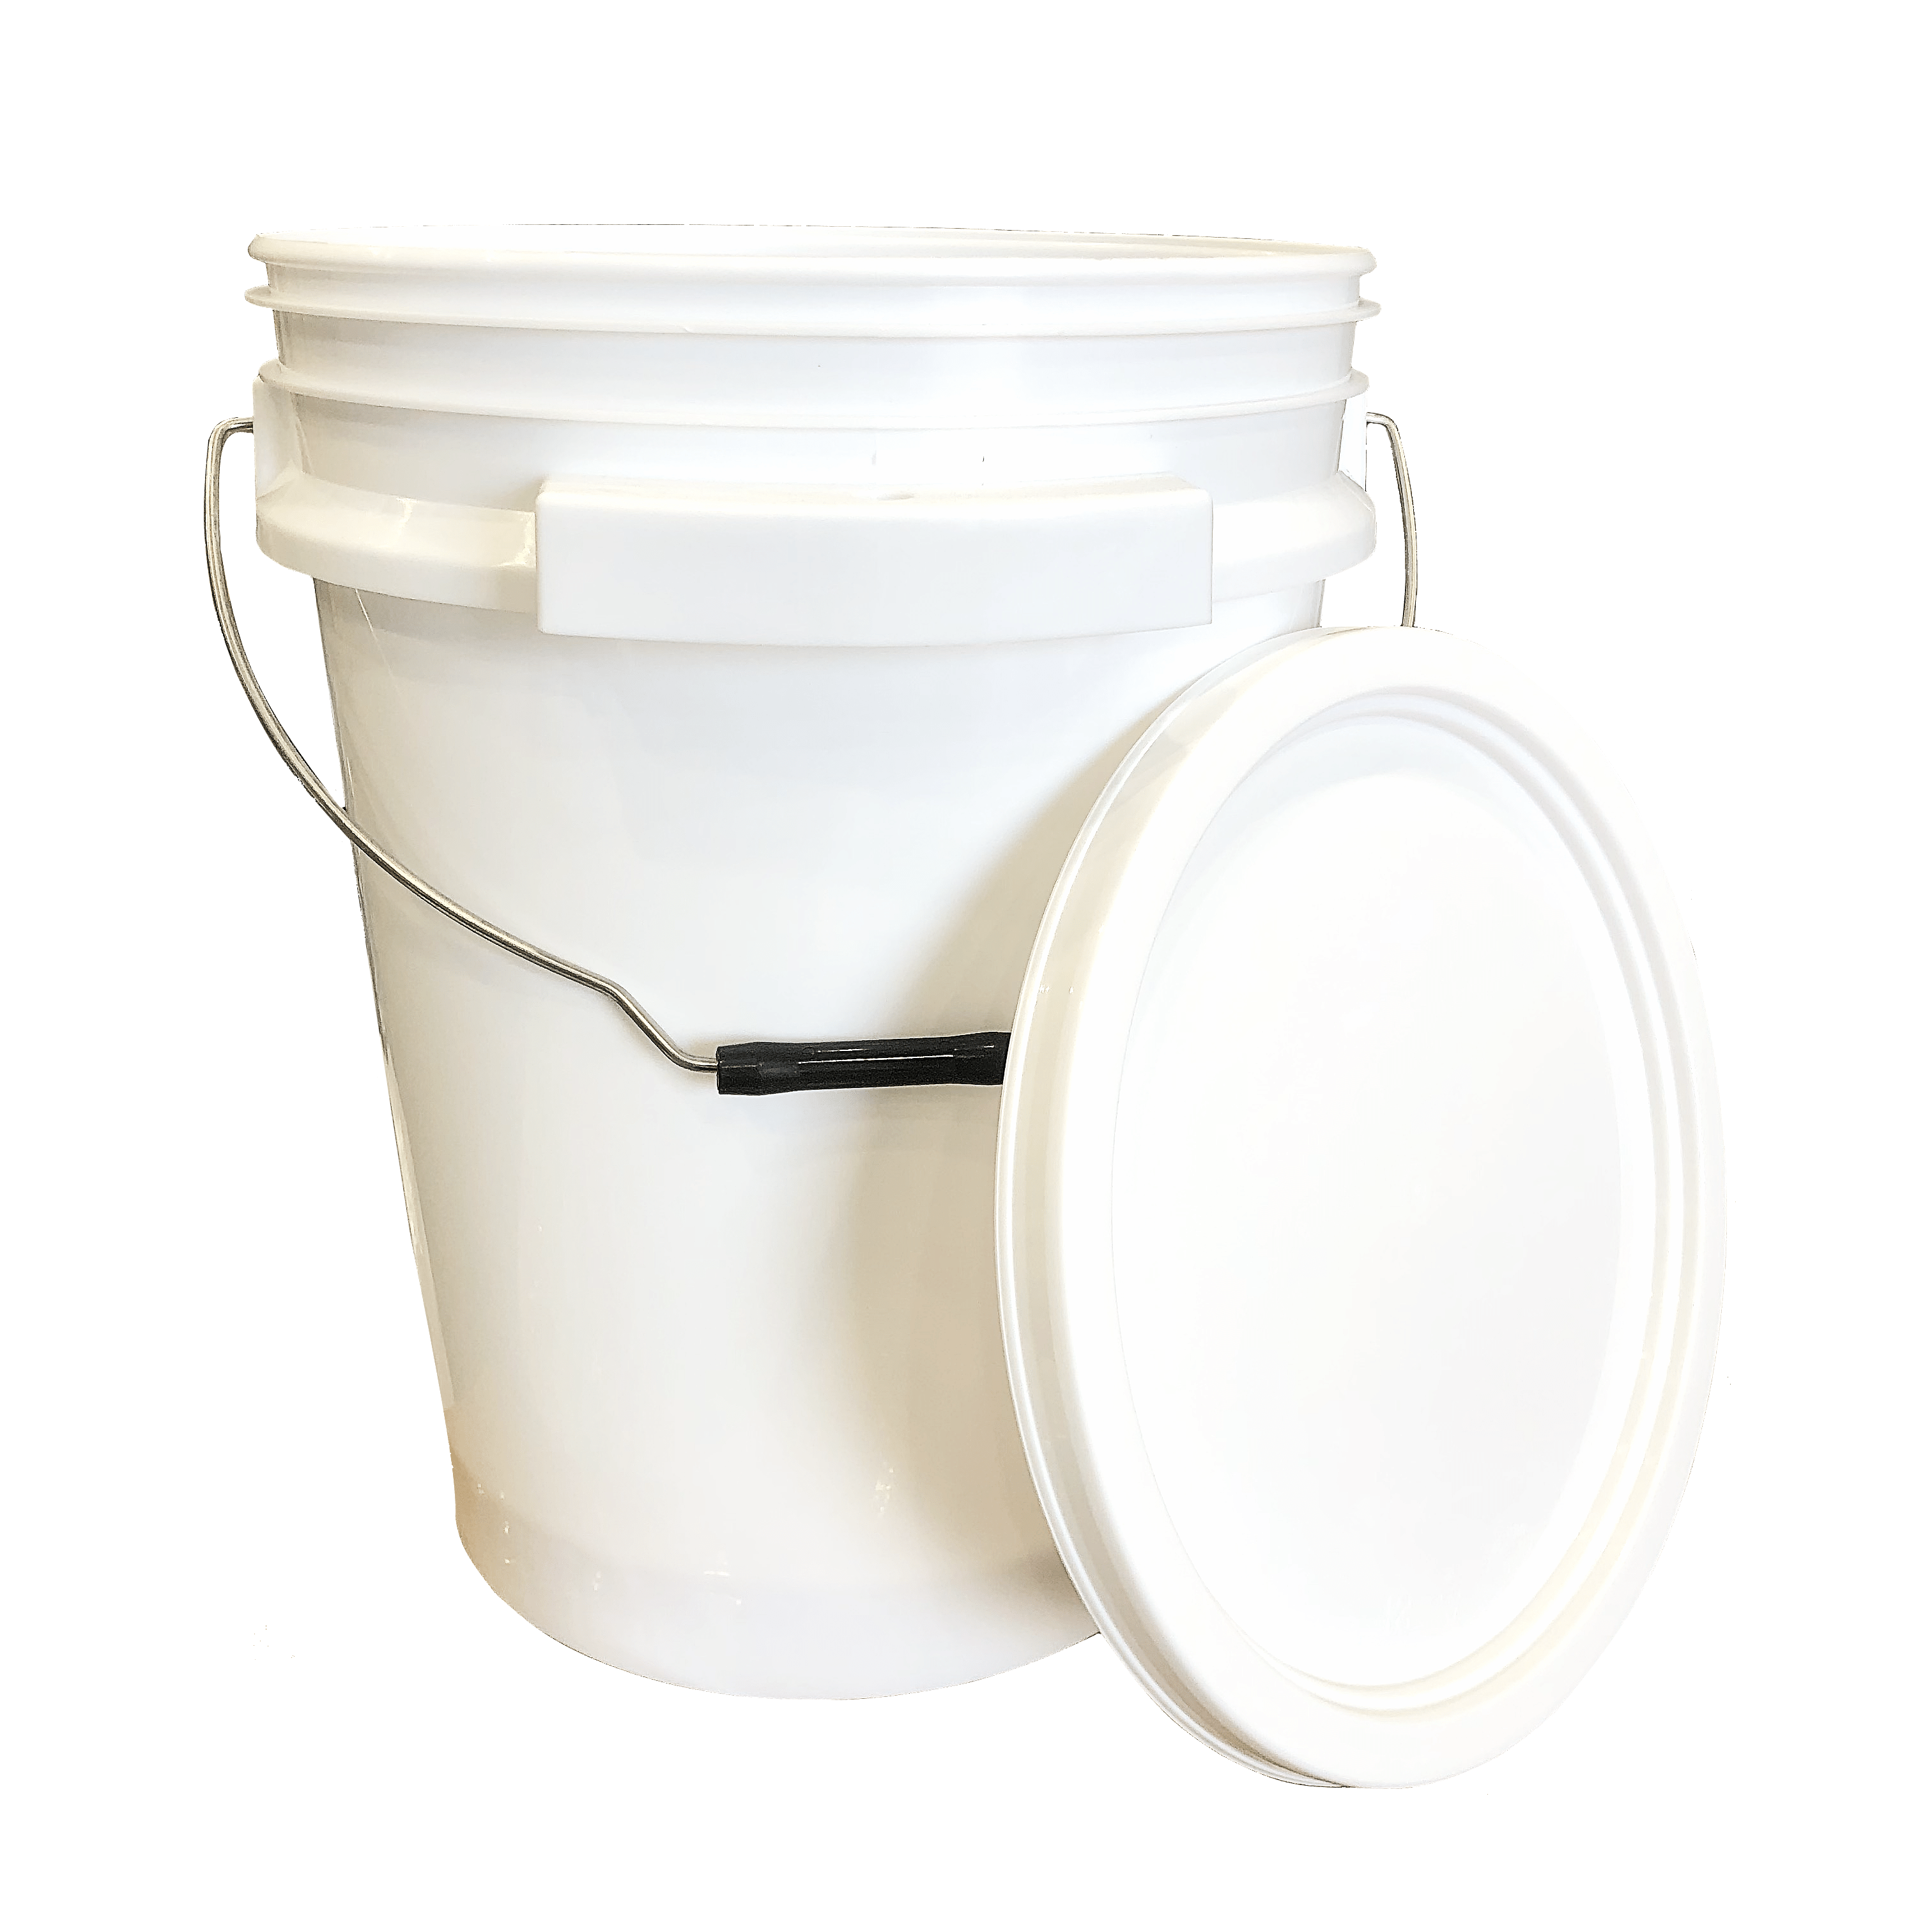 Lee Fisher Sports Bucket - 5 Gallon Metal Handle iSmart Bucket with